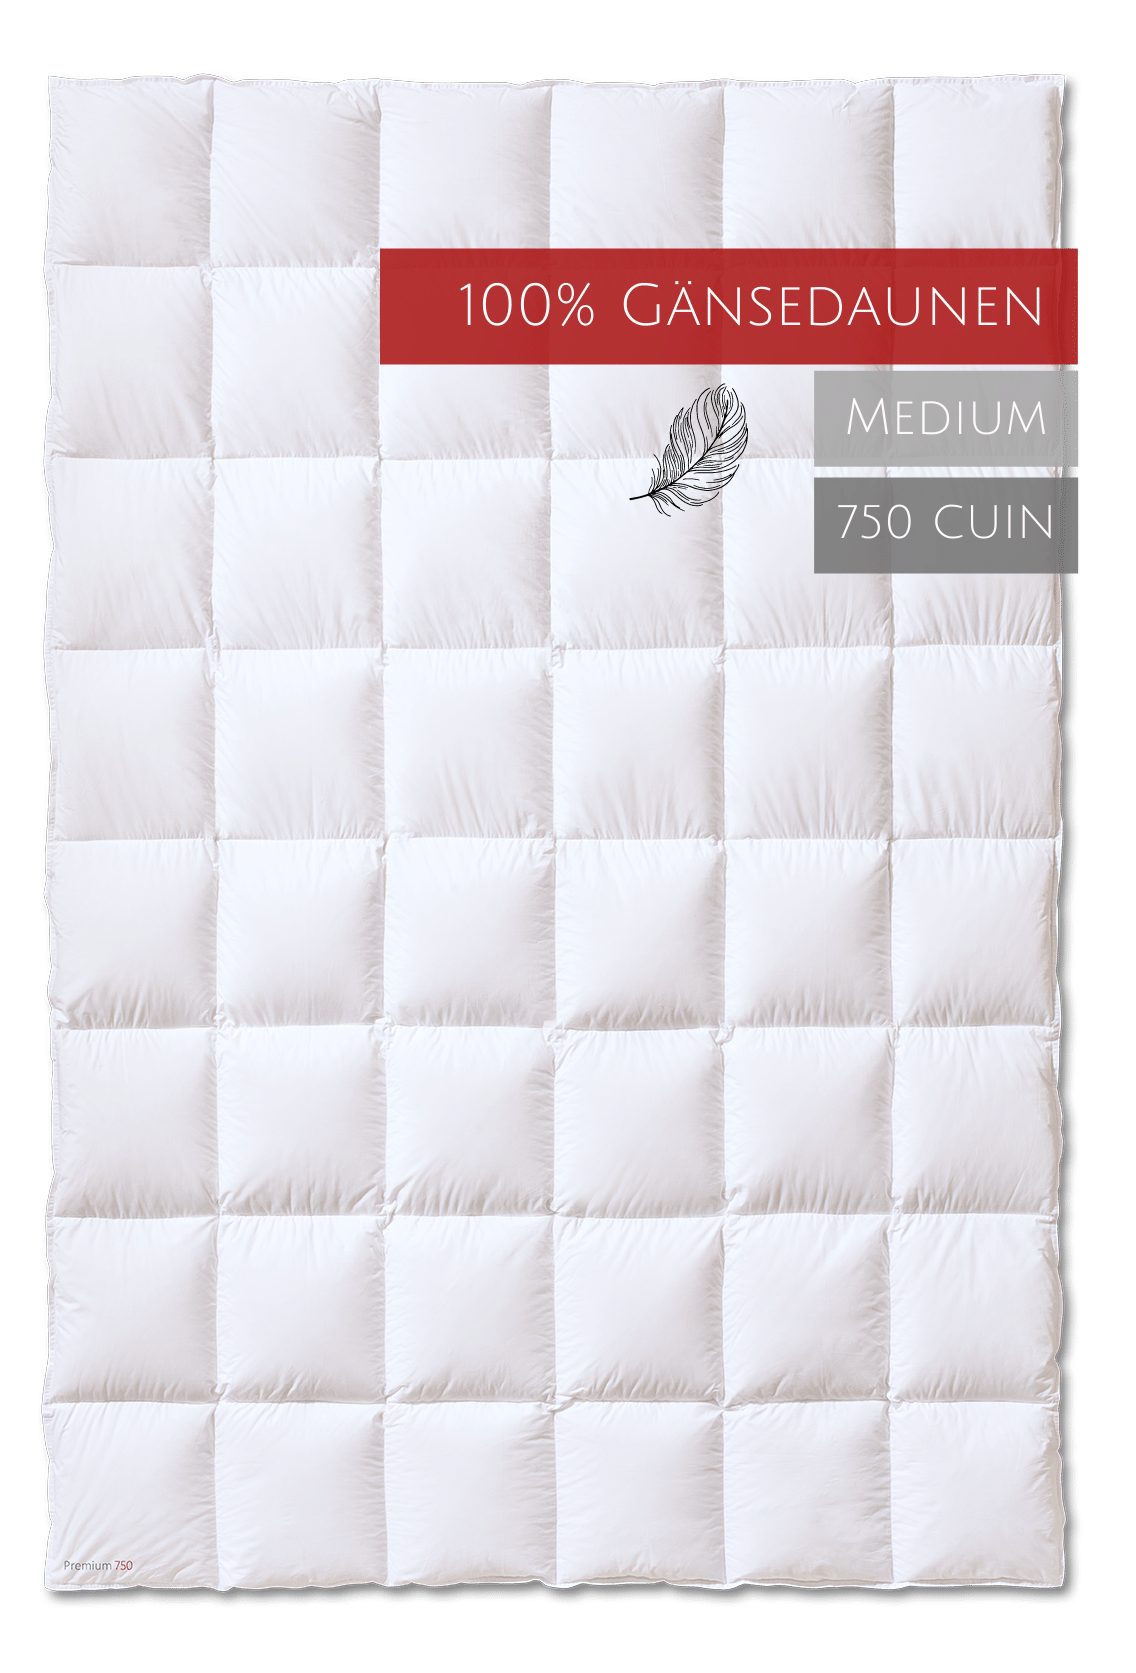 Bezug: Premium Leichtigkeit Kauffmann, hoher Füllung: 100% Baumwolle, 750, Gänsedaunenbettdecke, Wärmeverhalten 100% bei allergikerfreundlich, Gänsedaunen, Sehr gutes